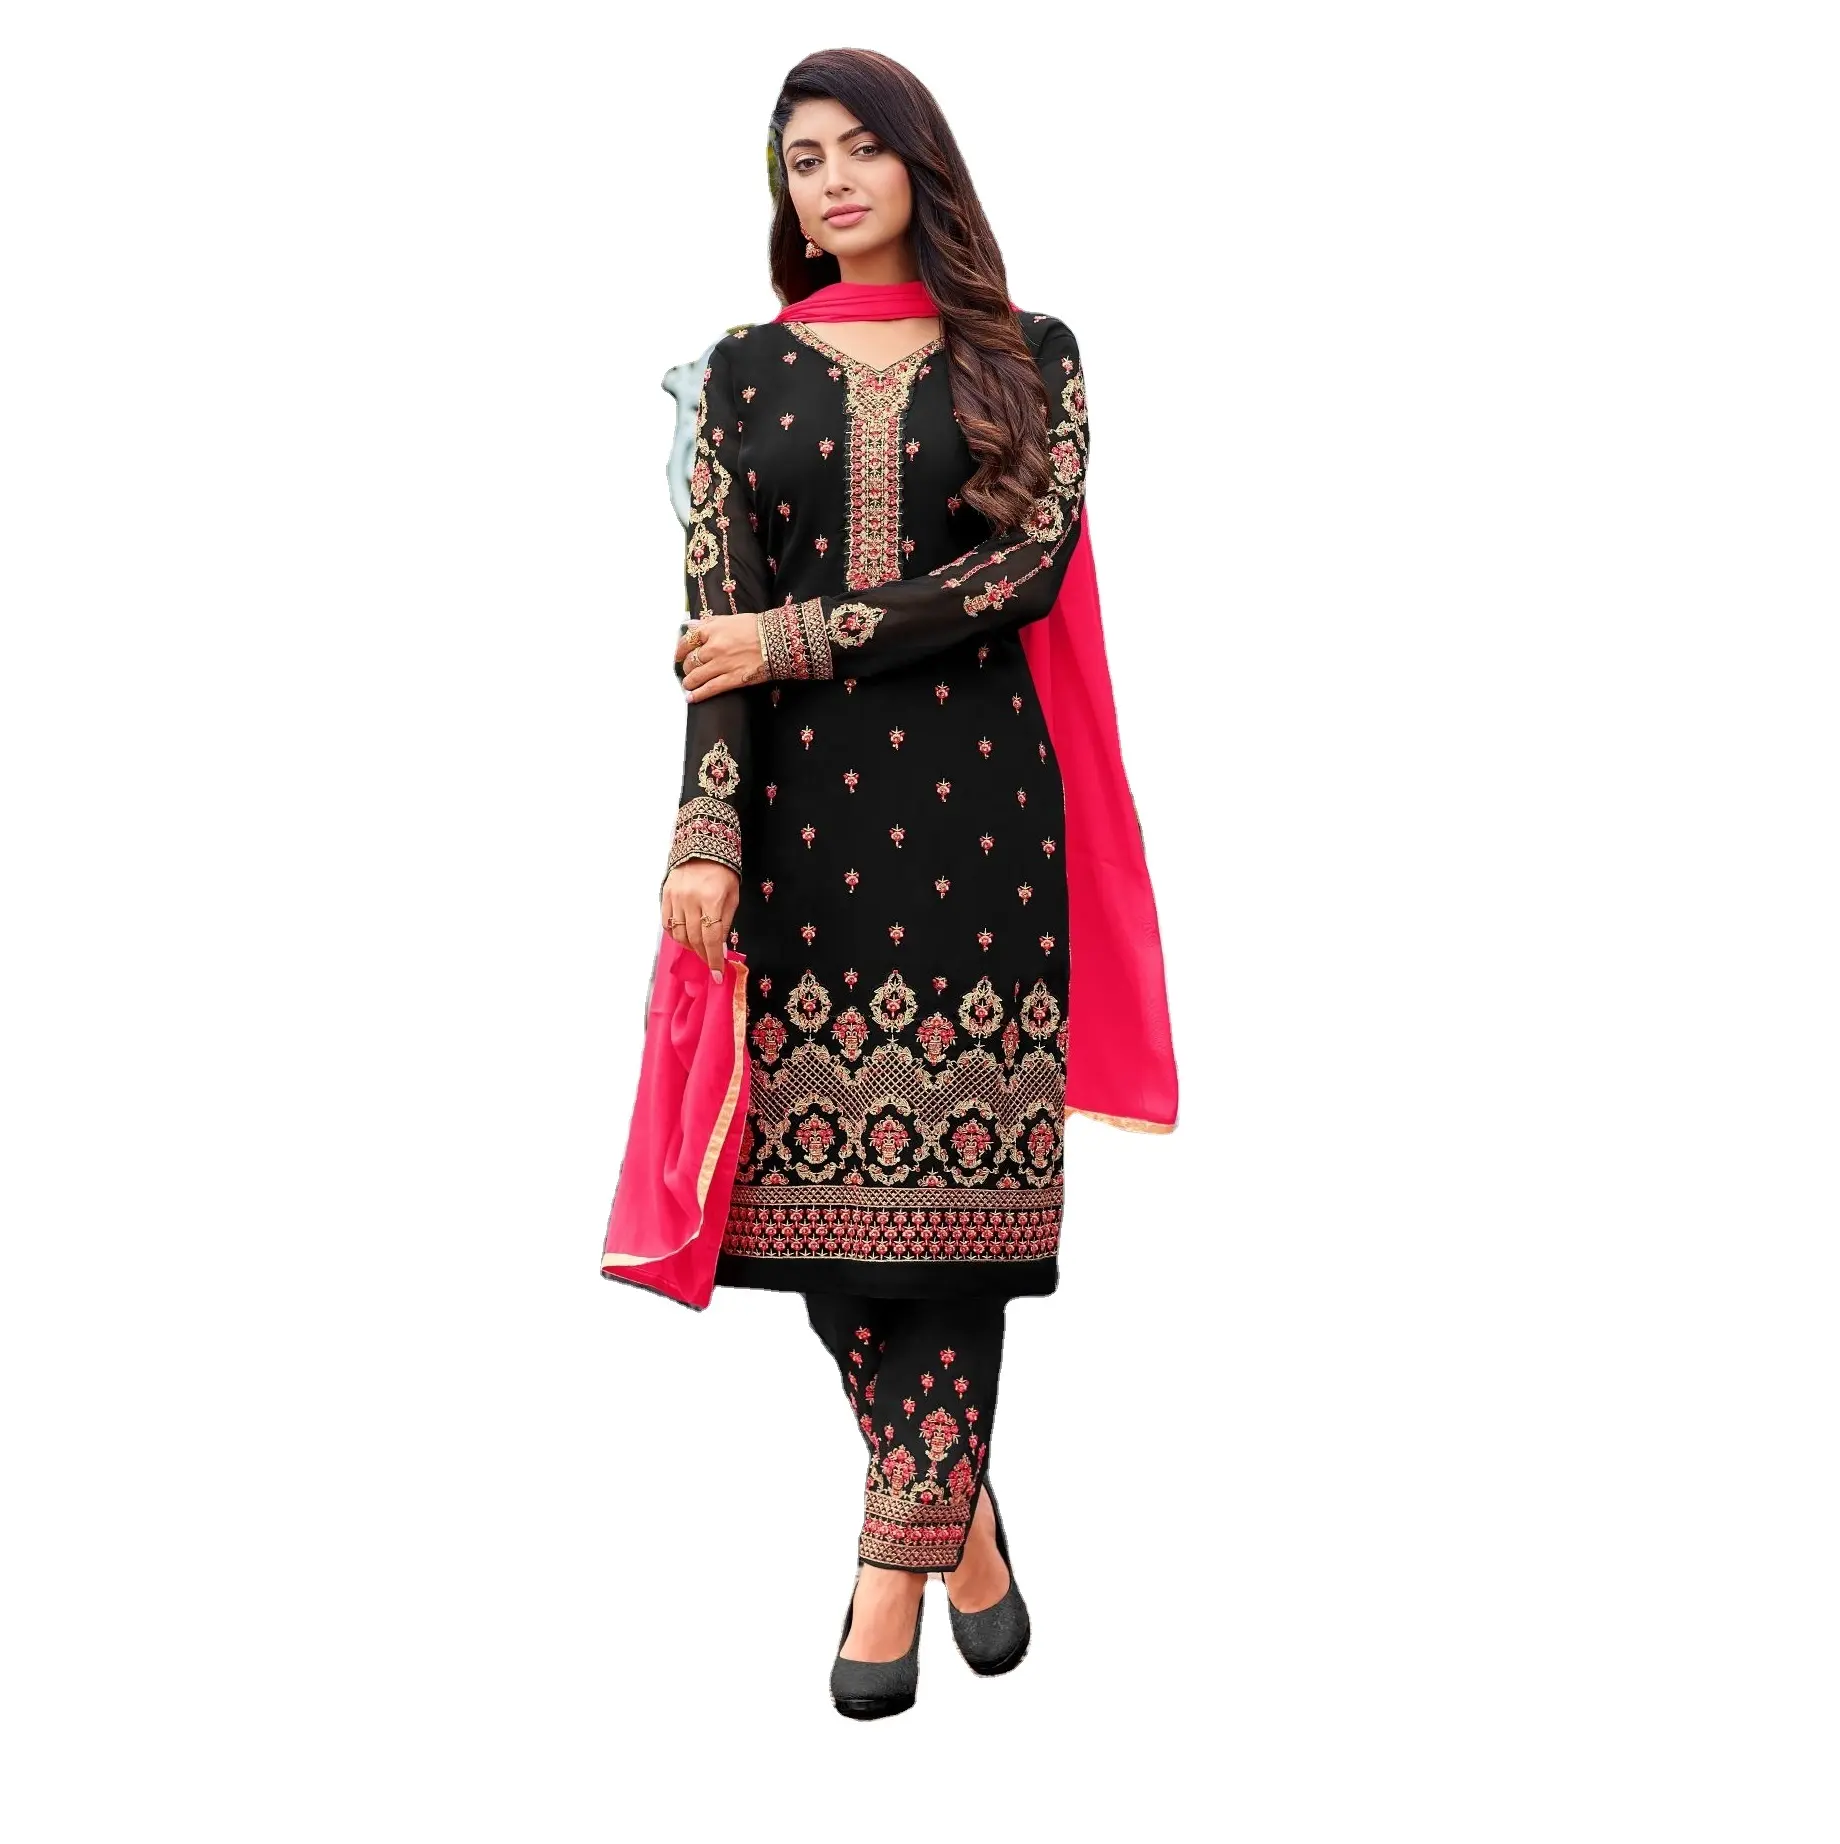 Bộ Đồ Salwar Nữ Bằng Vải Cotton Polyester Và Lụa Hiện Đại Mới Cho Trang Phục Dự Tiệc Xuất Khẩu Từ Ấn Độ